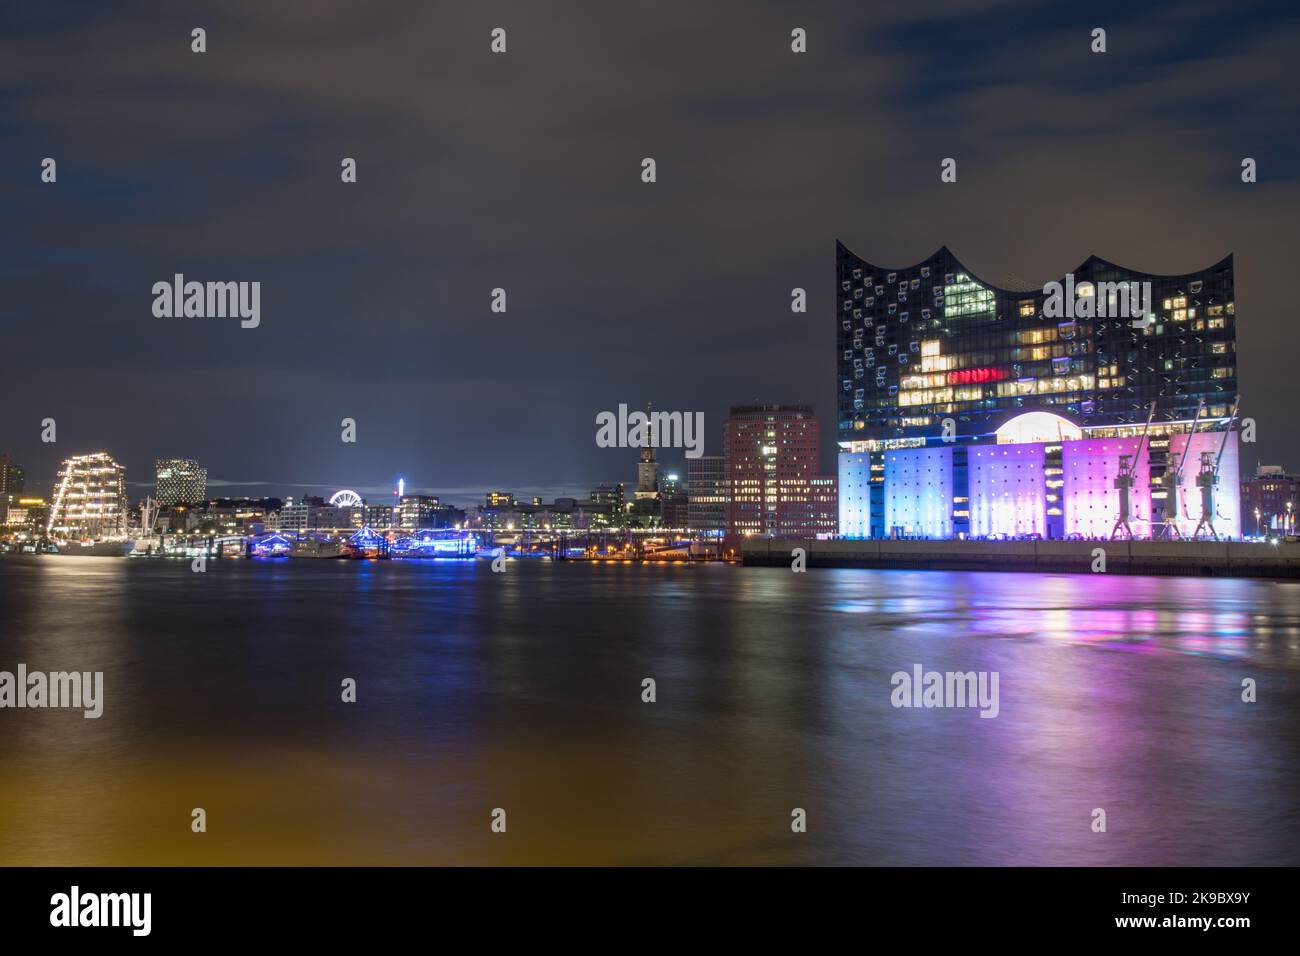 Panorama con la Sala Filarmonica dell'Elba ad Amburgo. Illuminato nei colori di Christopher Street Day - Panorama mit der Elbphilharmonie ad Amburgo Foto Stock